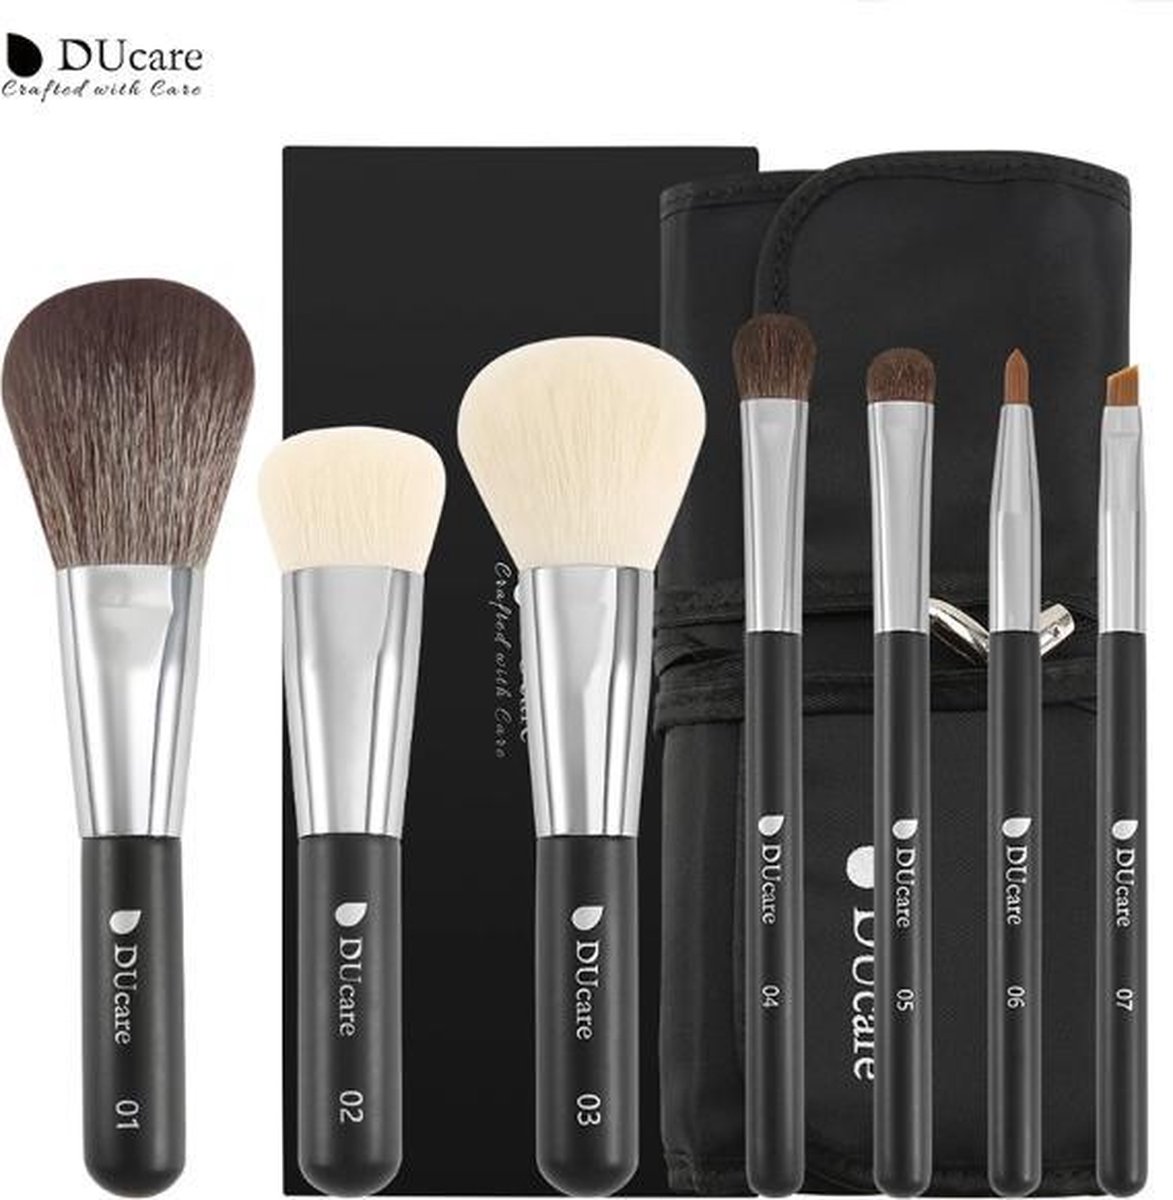 DUcare - Professionele make-up set - 7 delig - Make-up kwasten met etui - Brush set - Poeder kwast - Foundation - Oogschaduw - Make-up kwasten geschenkset - Zwart